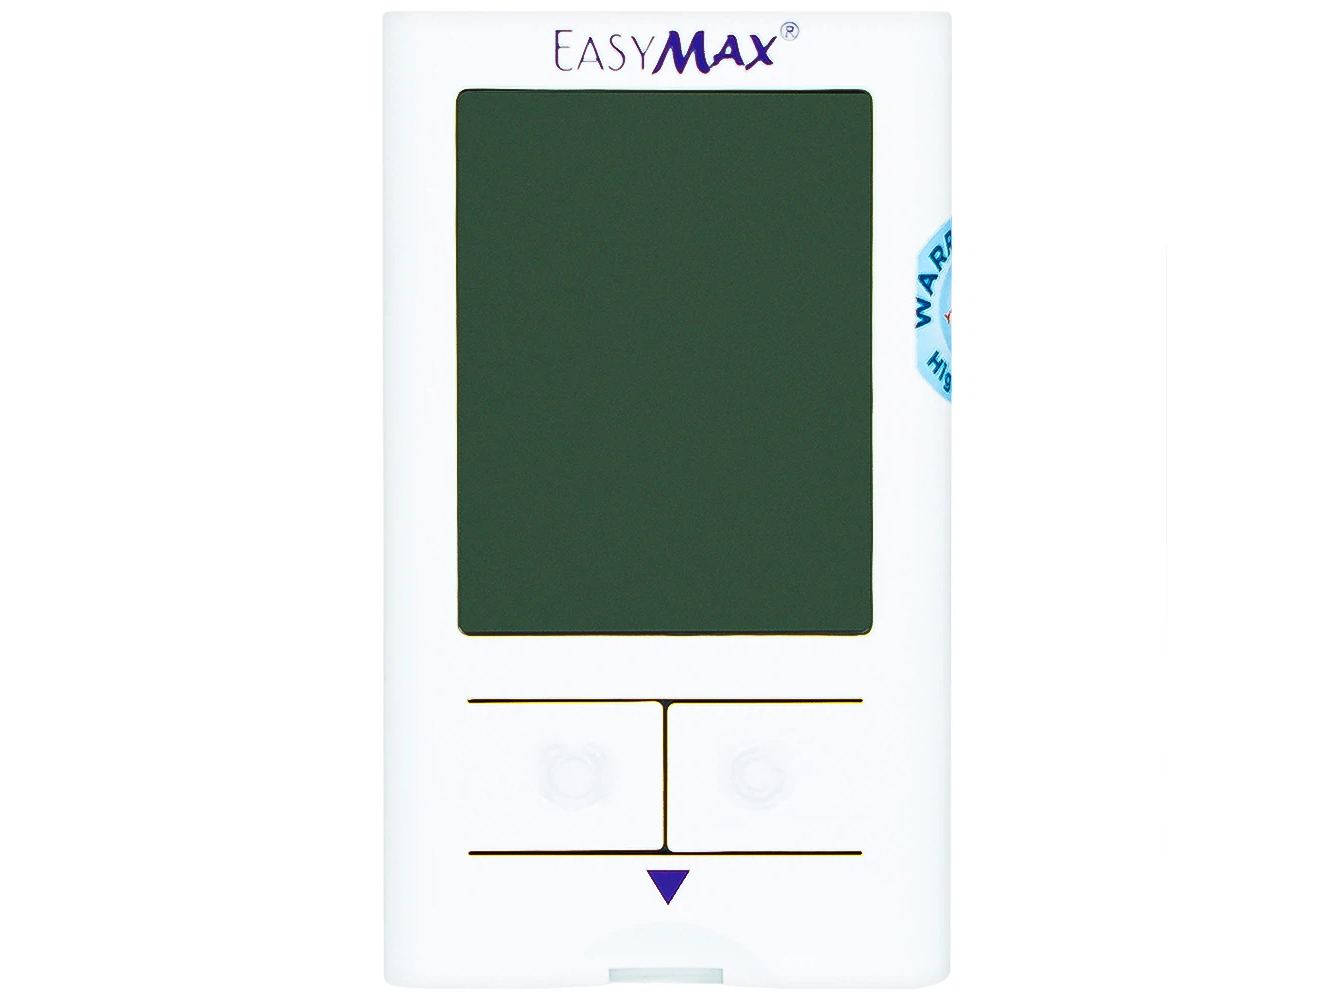 Máy đo đường huyết Easymax Mini